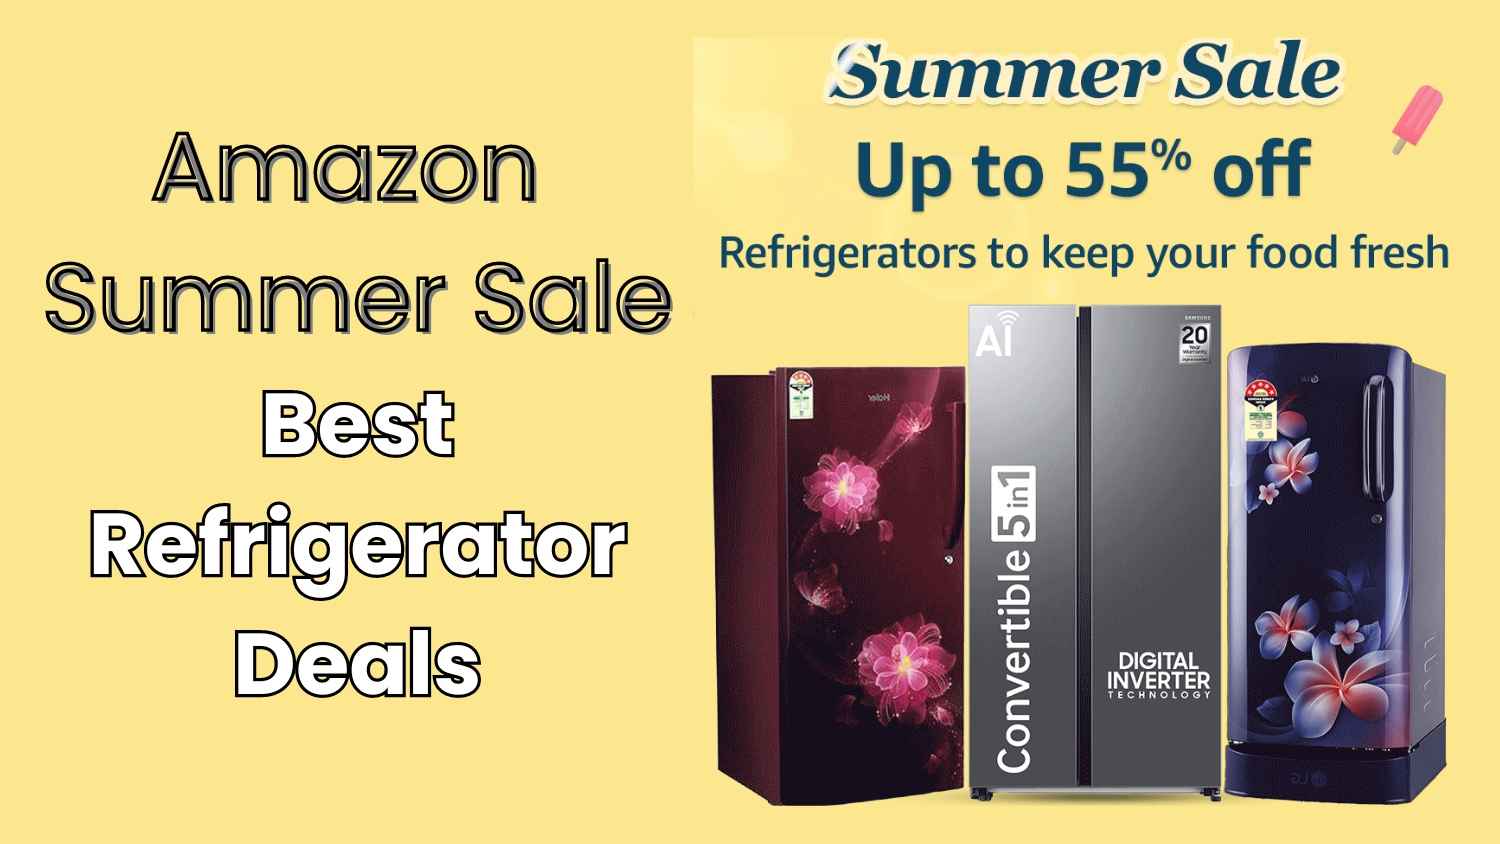 Amazon Summer Sale నుండి లేటెస్ట్ Refrigerator ల పైన గొప్ప డిస్కౌంట్ ఆఫర్లు అందుకోండి.!